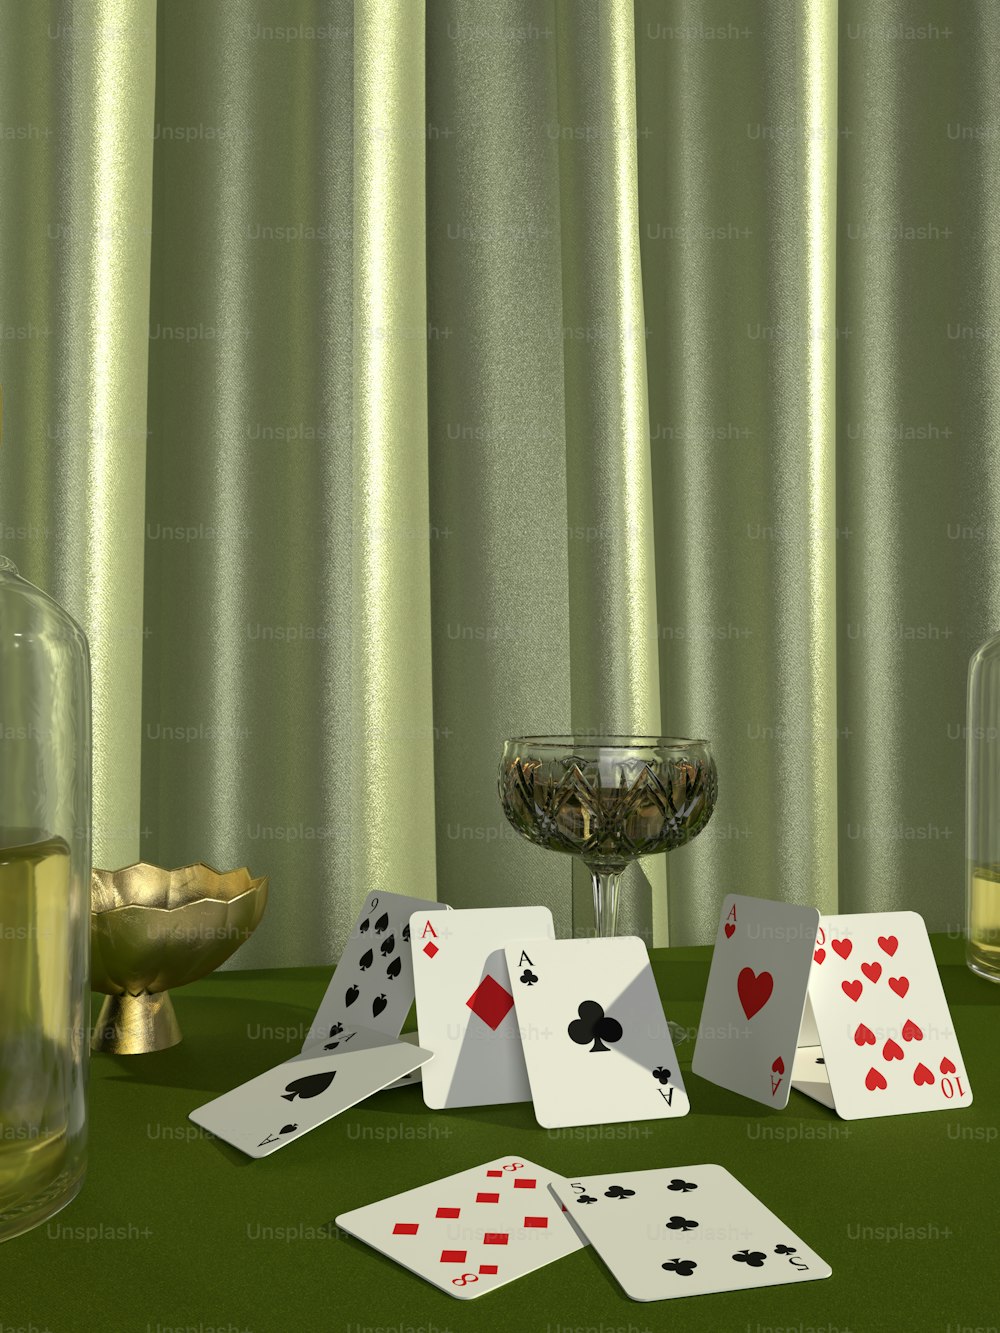 ein Tisch mit Spielkarten neben einem Glas Wein